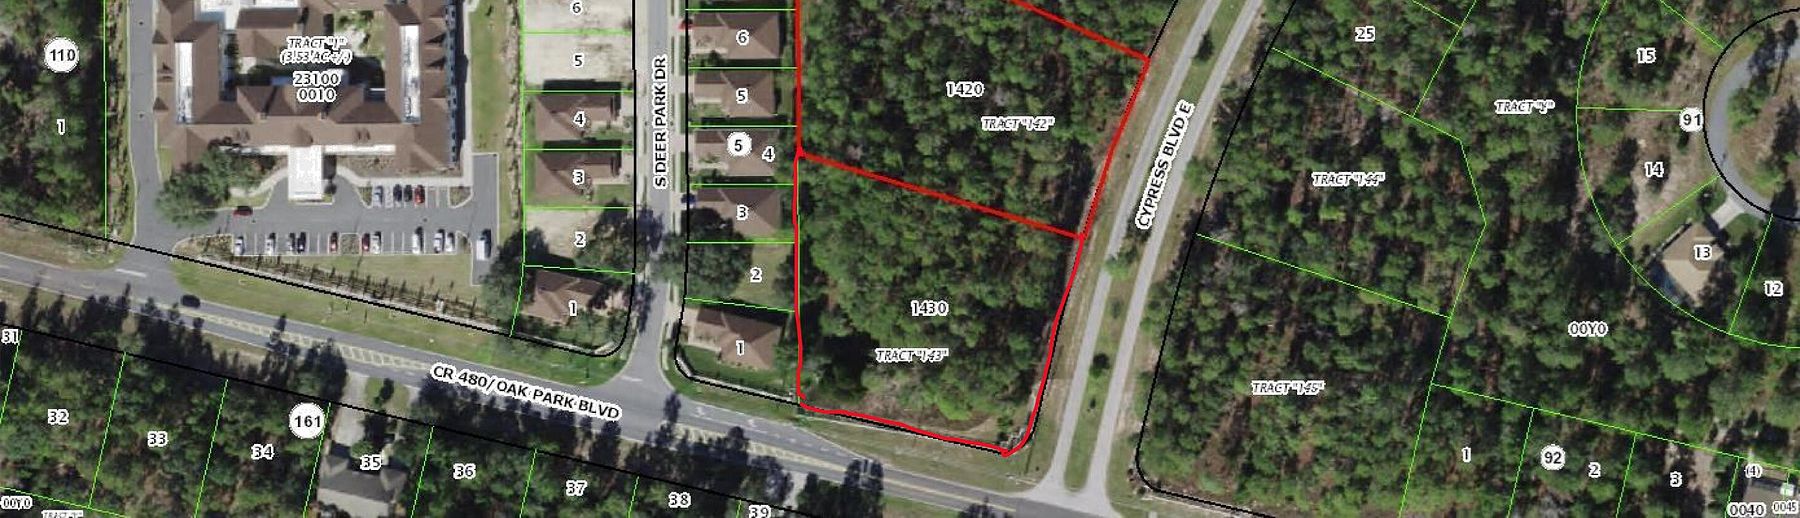 2.8 Acres of Mixed-Use Land Homosassa, Florida, FL